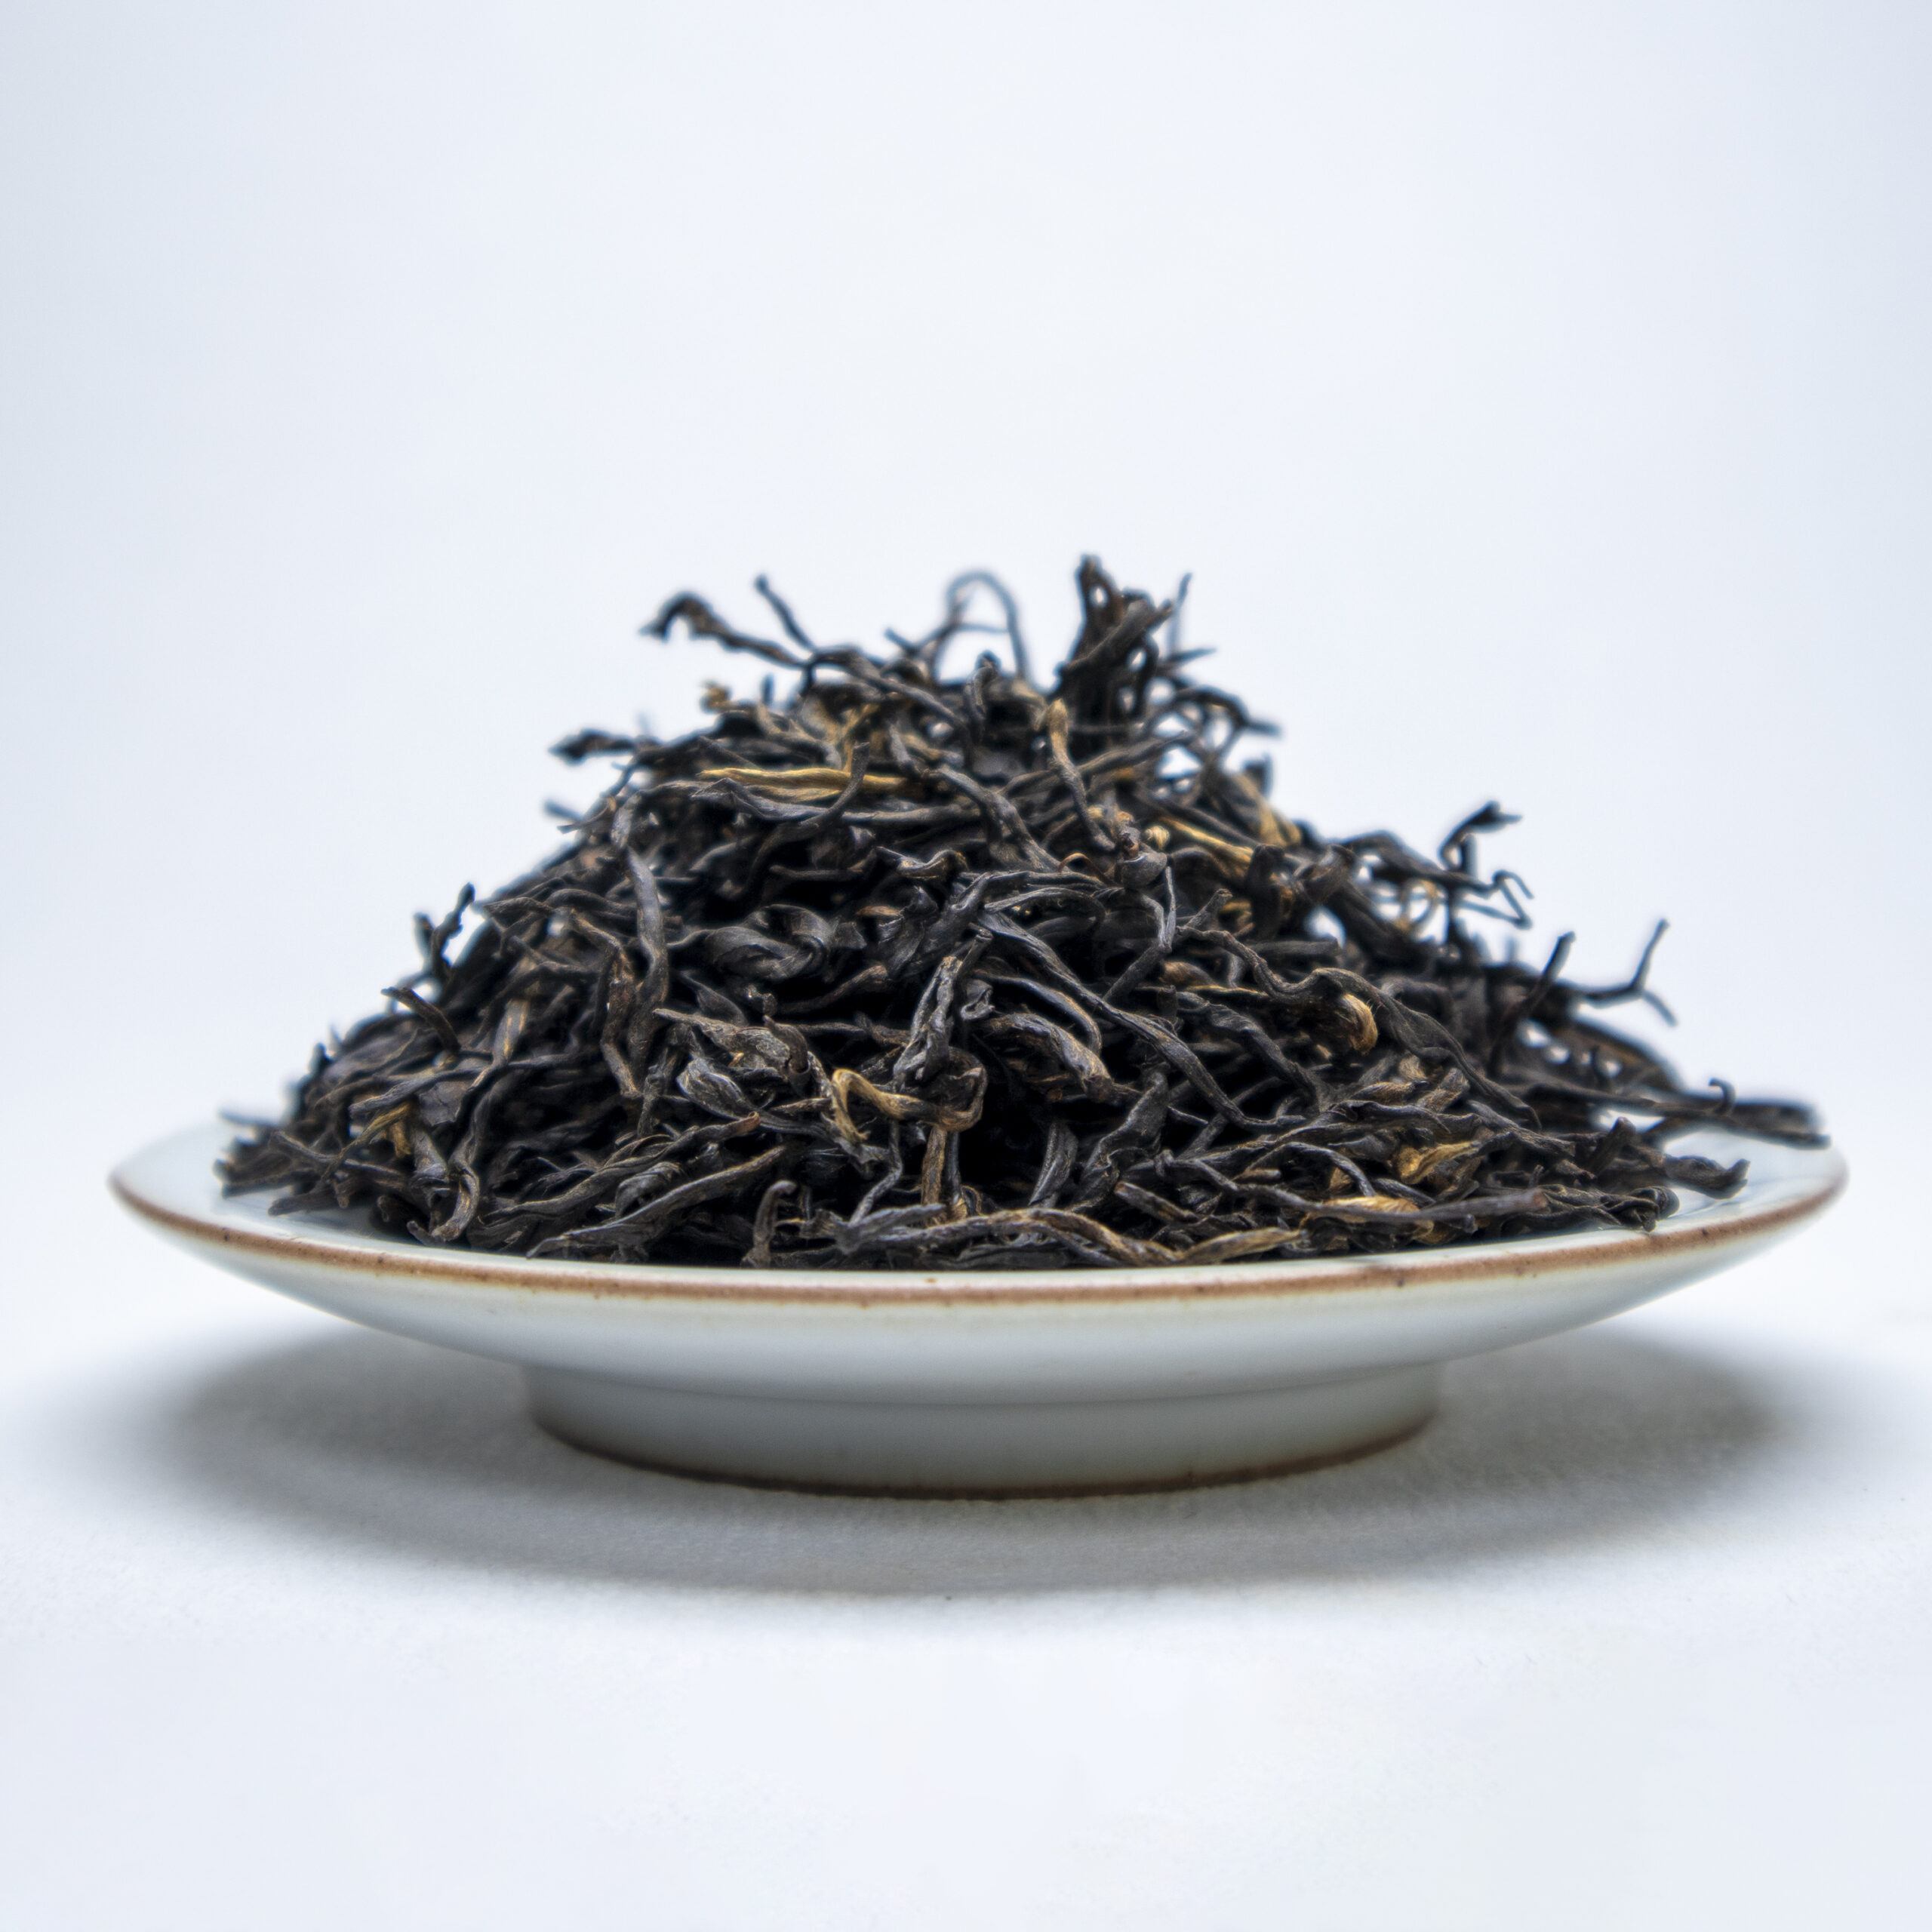 Black tea dry leaves